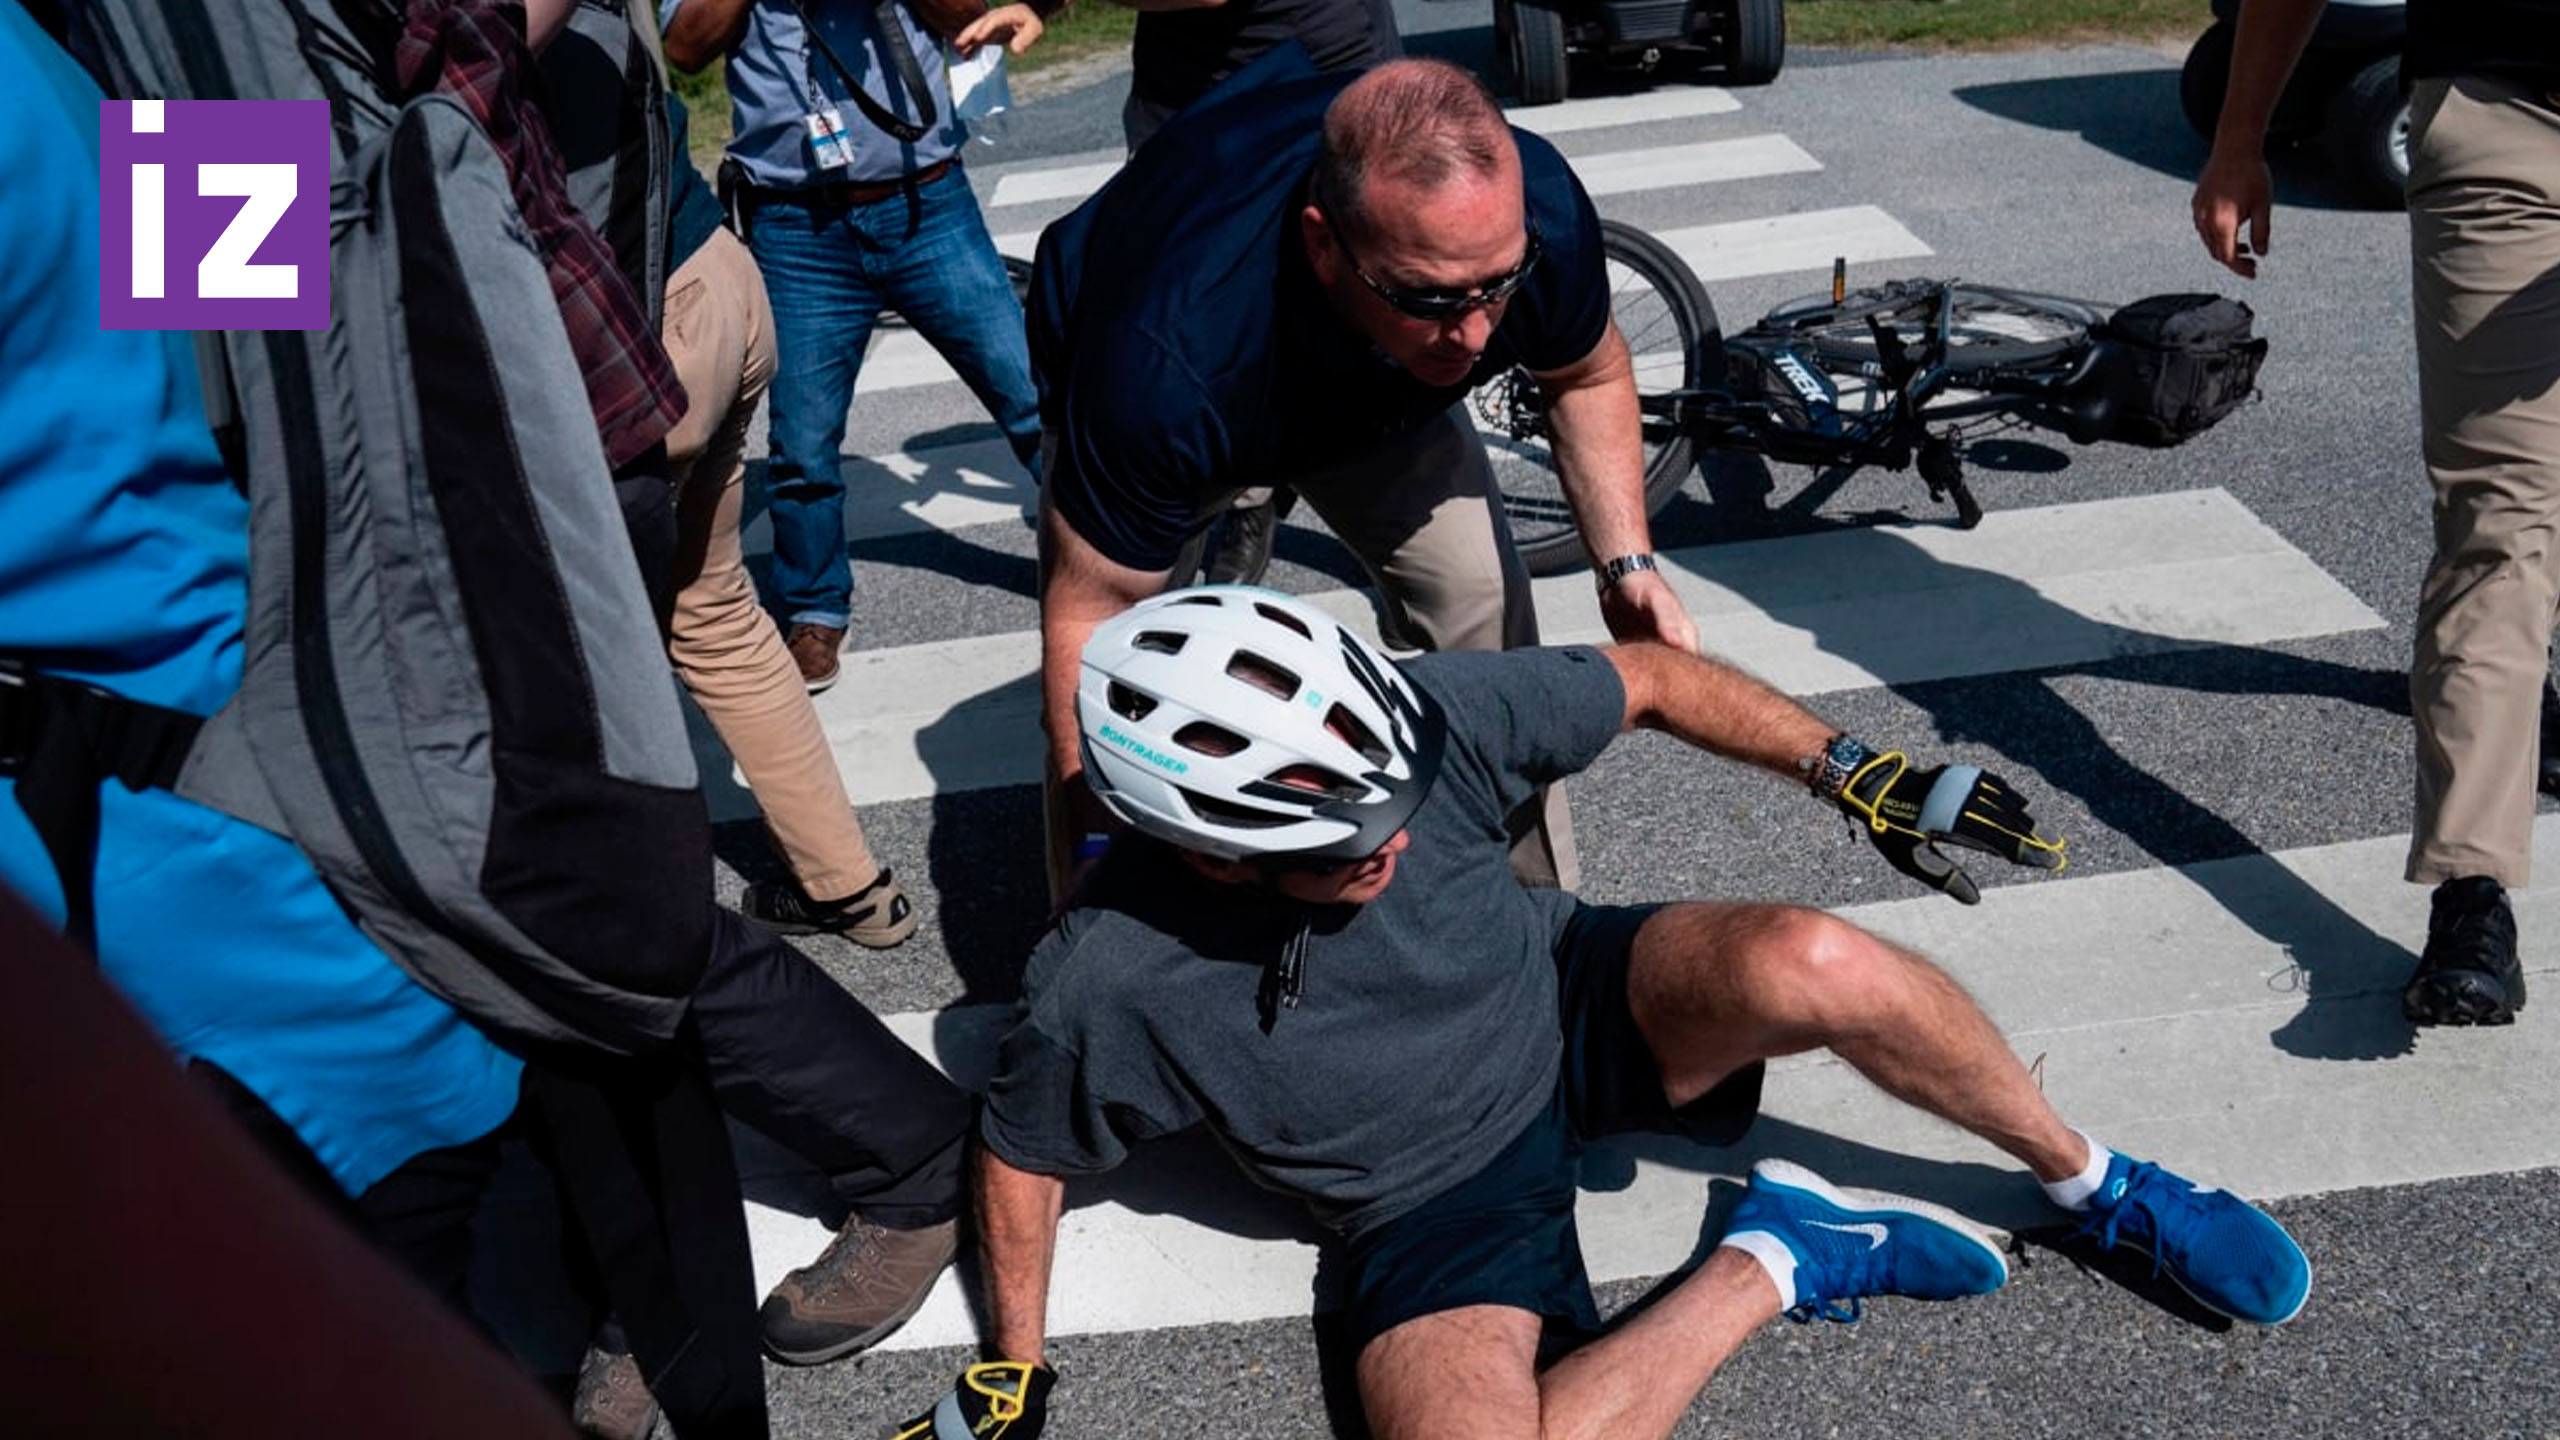 Видео с велосипедистом. Джо Байден падает с велосипеда. Джо Байден упал с велосипеда во время прогулки. Джо Байден на велосипеде. Байлен впал с велосипеда.